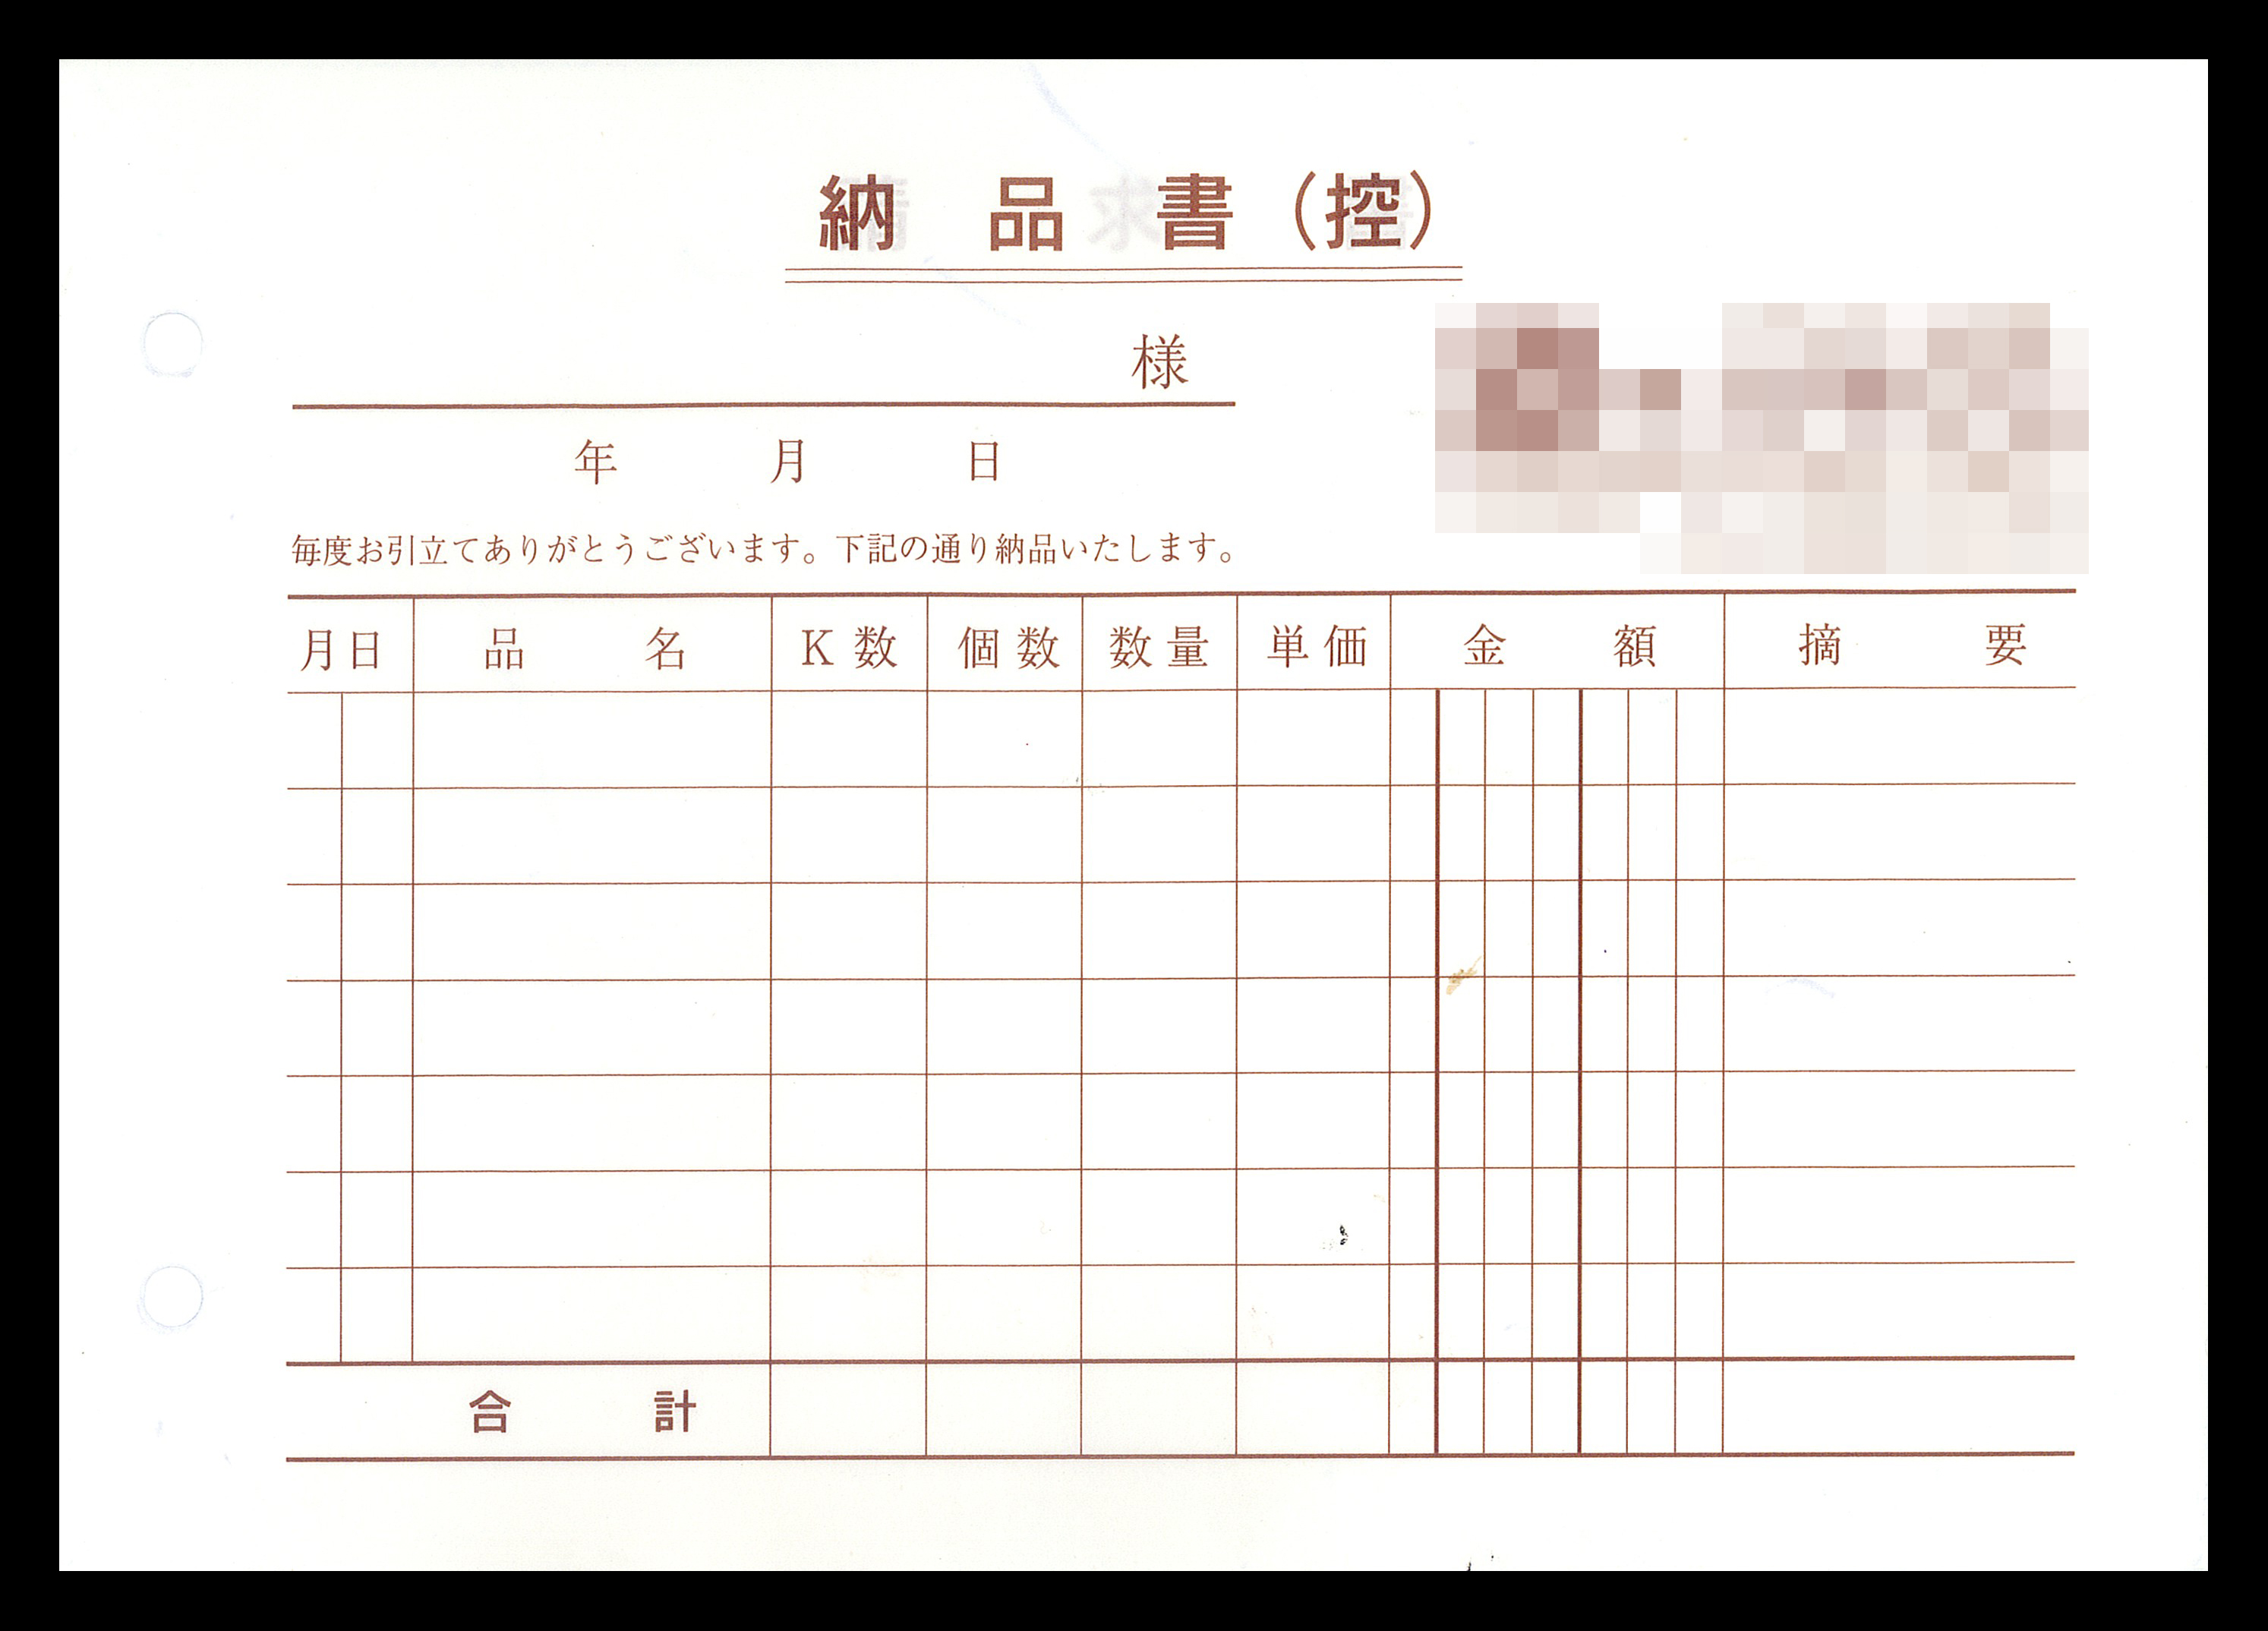 和菓子製造販売業で使用する合計請求書（2枚複写50組）の伝票作成実績